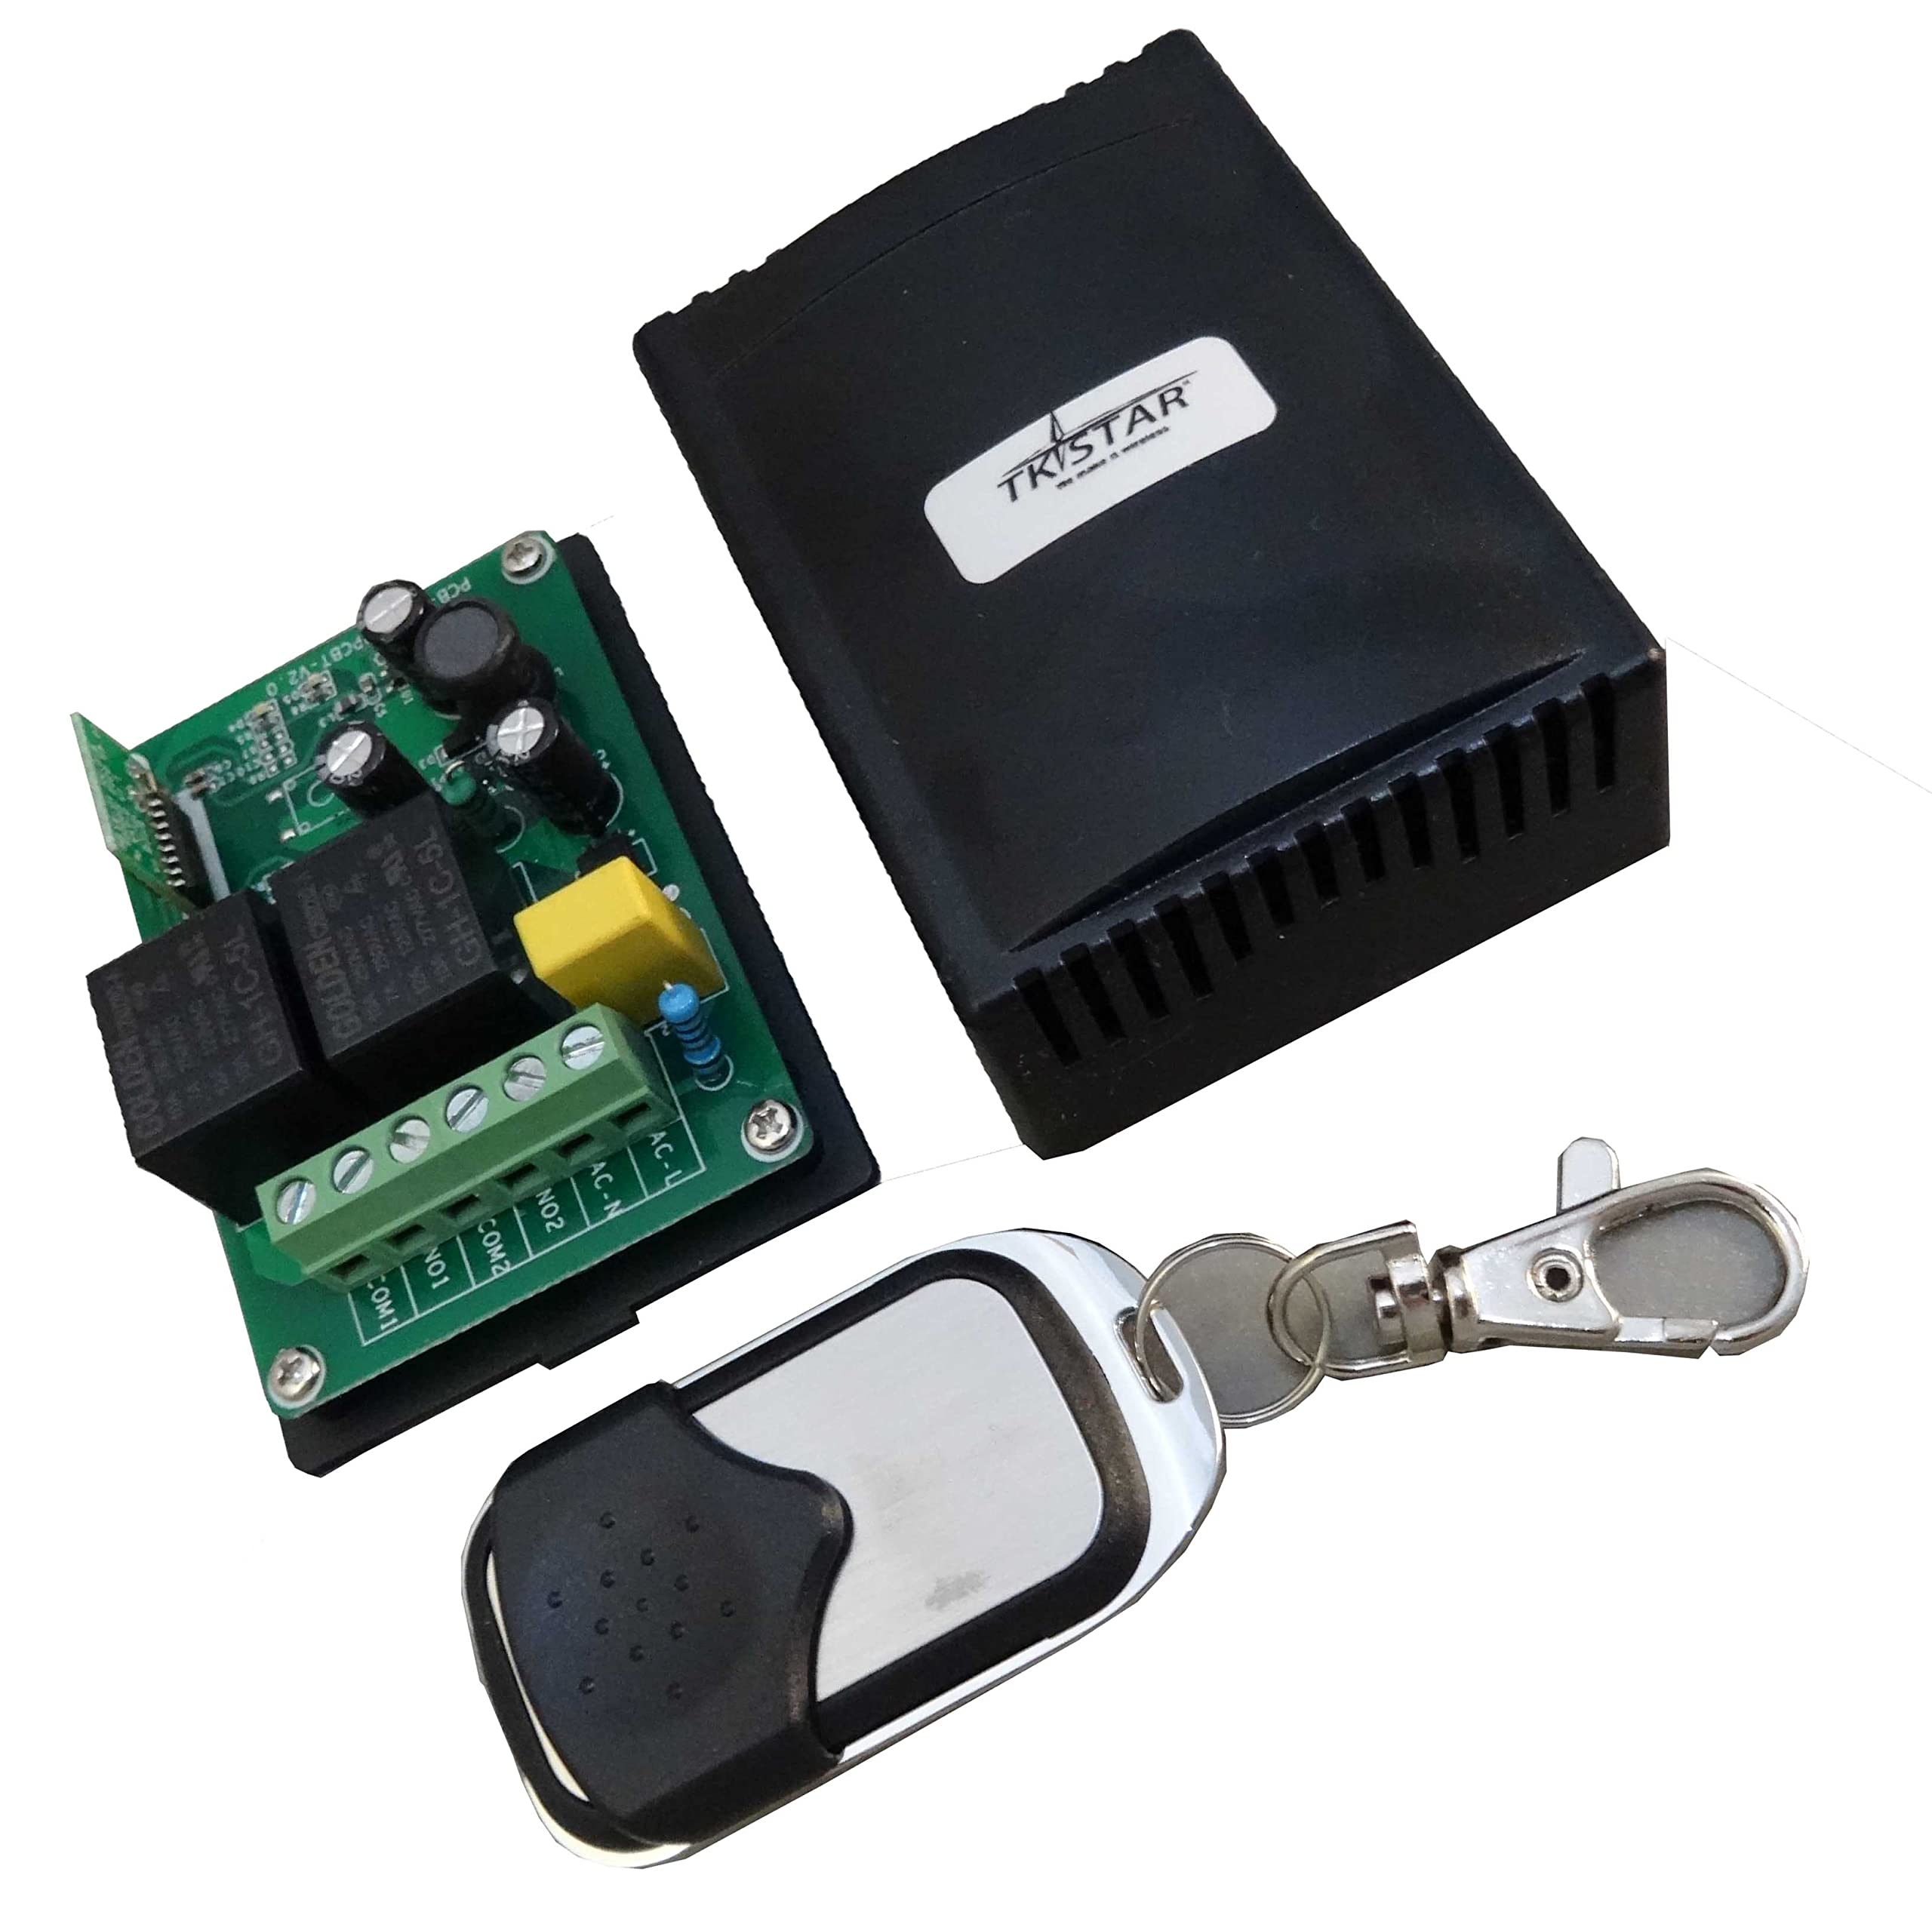 TK STAR Bluetooth Garagen-tor Tor-antrieb Öffner Steuerung Empfänger potentialfrei Taster + Funk 2-Tasten Handsender + APP paßt zu Hörmann, Novoferm, Normstahl, Liftmaster